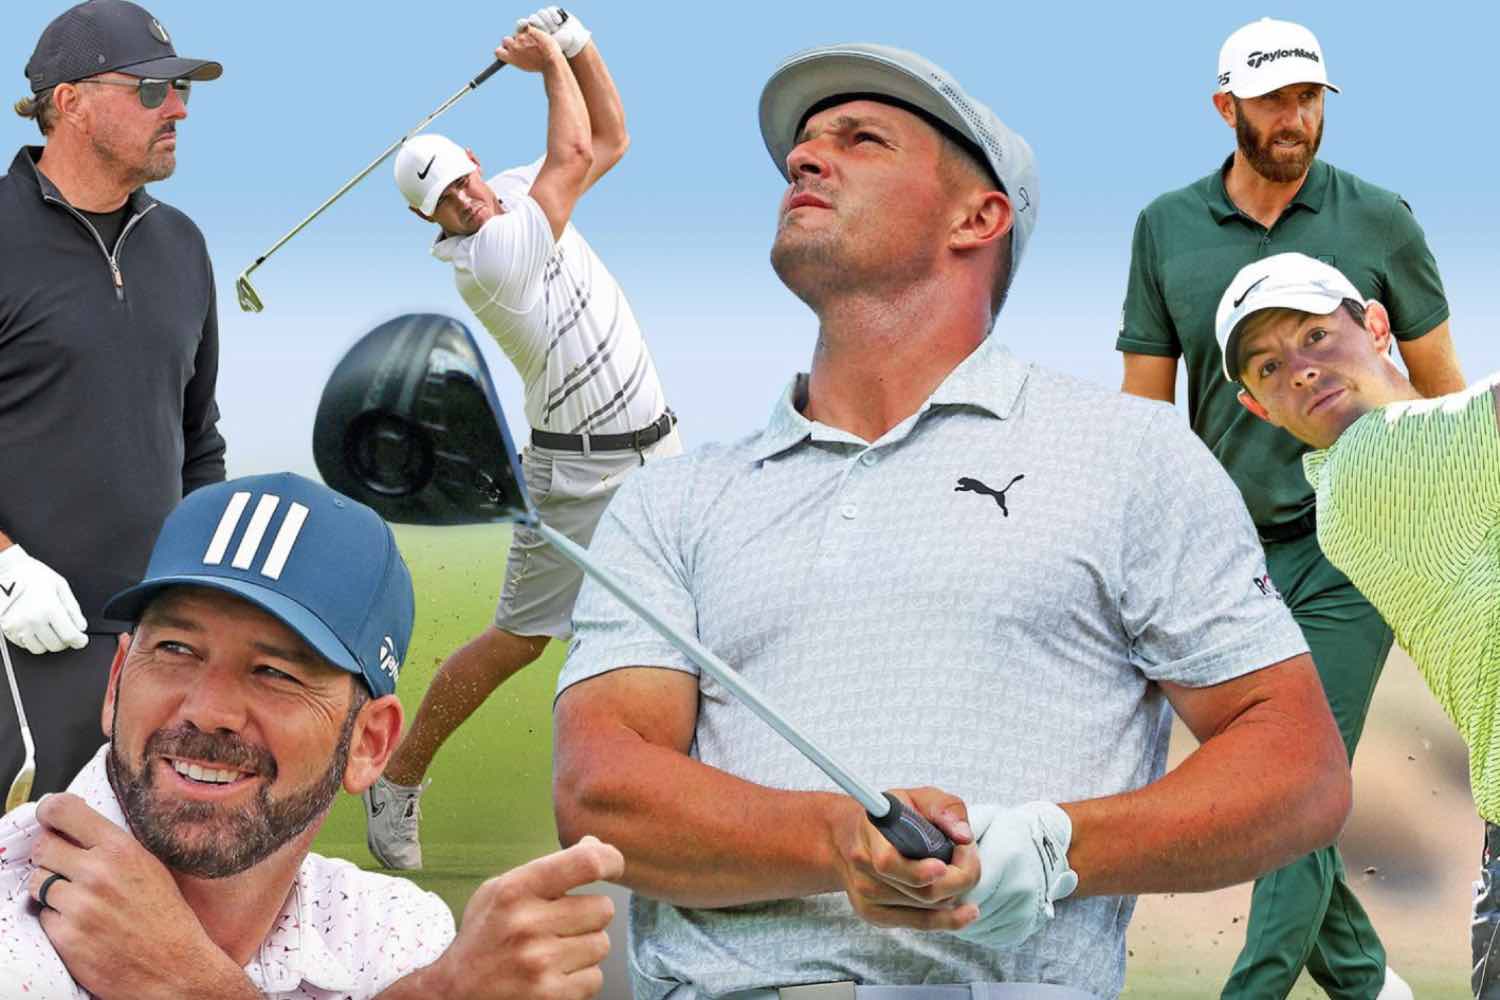 Melhores Jogadores de Golfe da Atualidade - Parte 2!